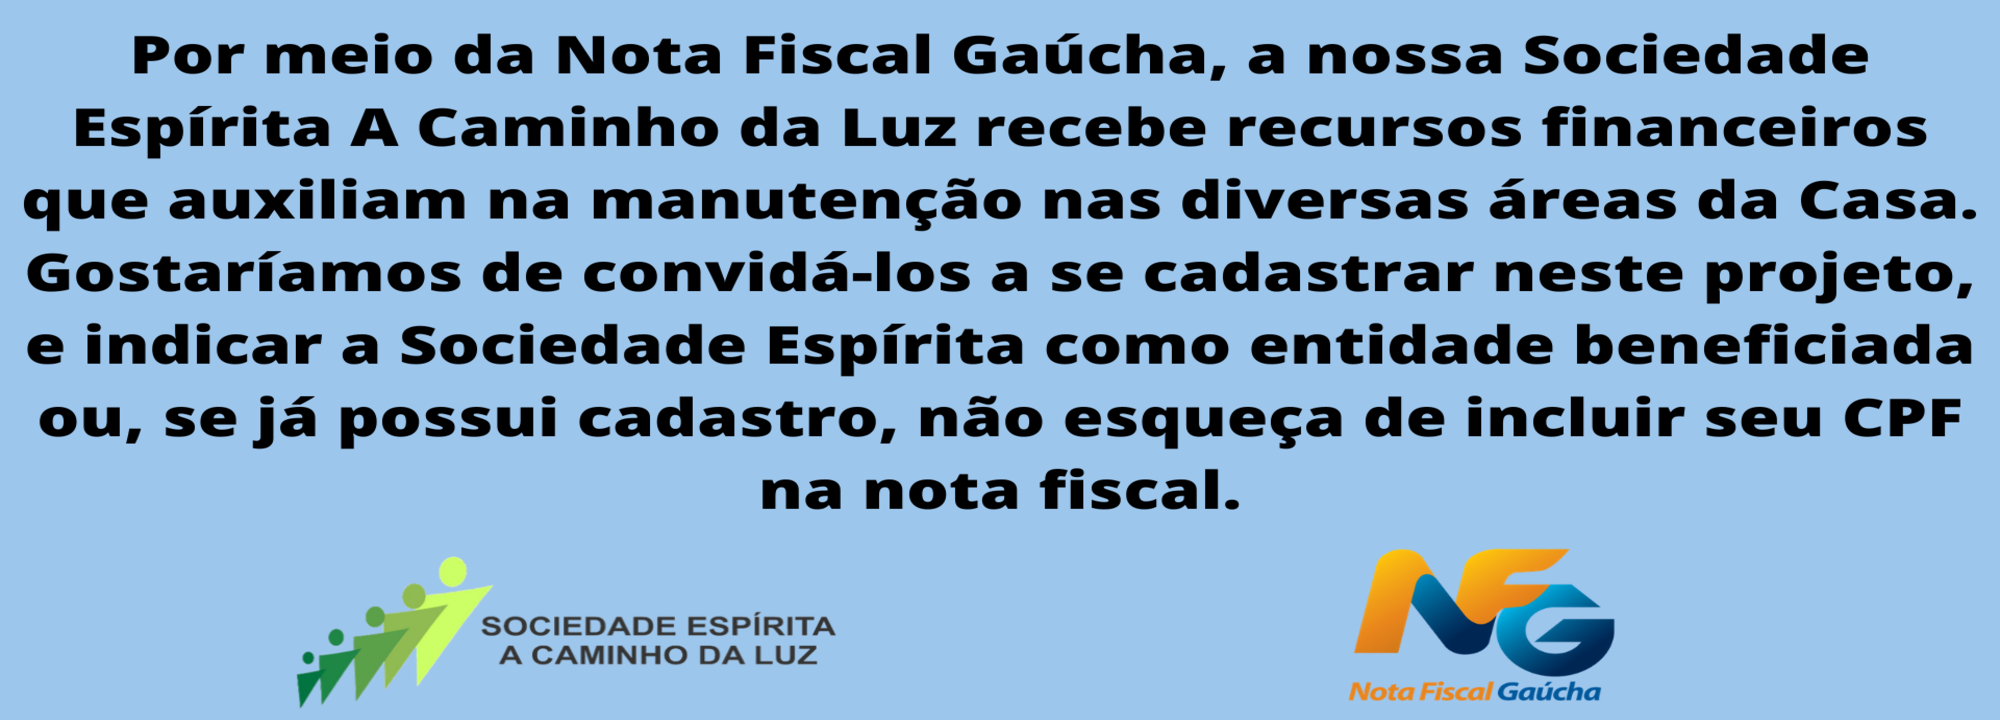 Nota Fiscal Gaucha